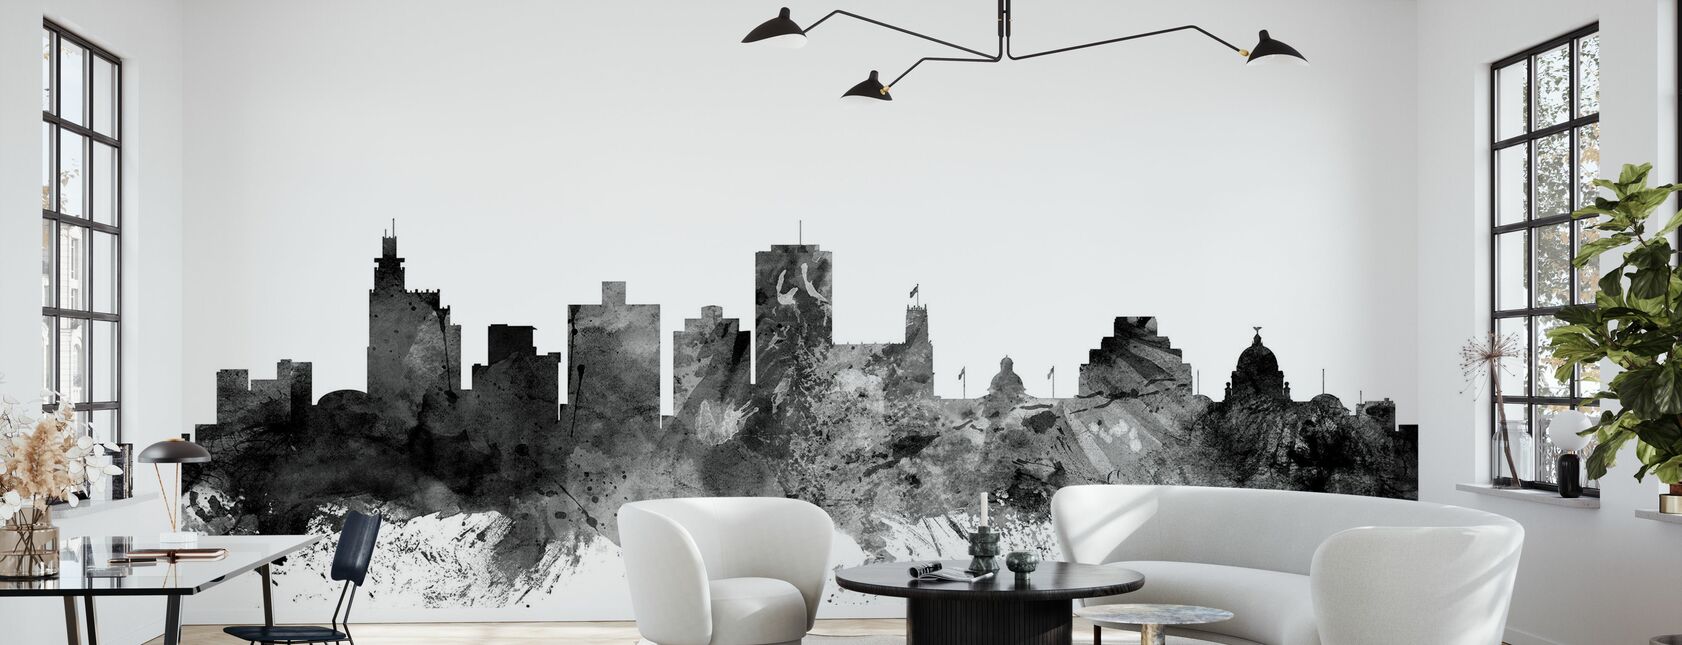 Jackson Mississippi Skyline Black - Wallpaper - Living Room